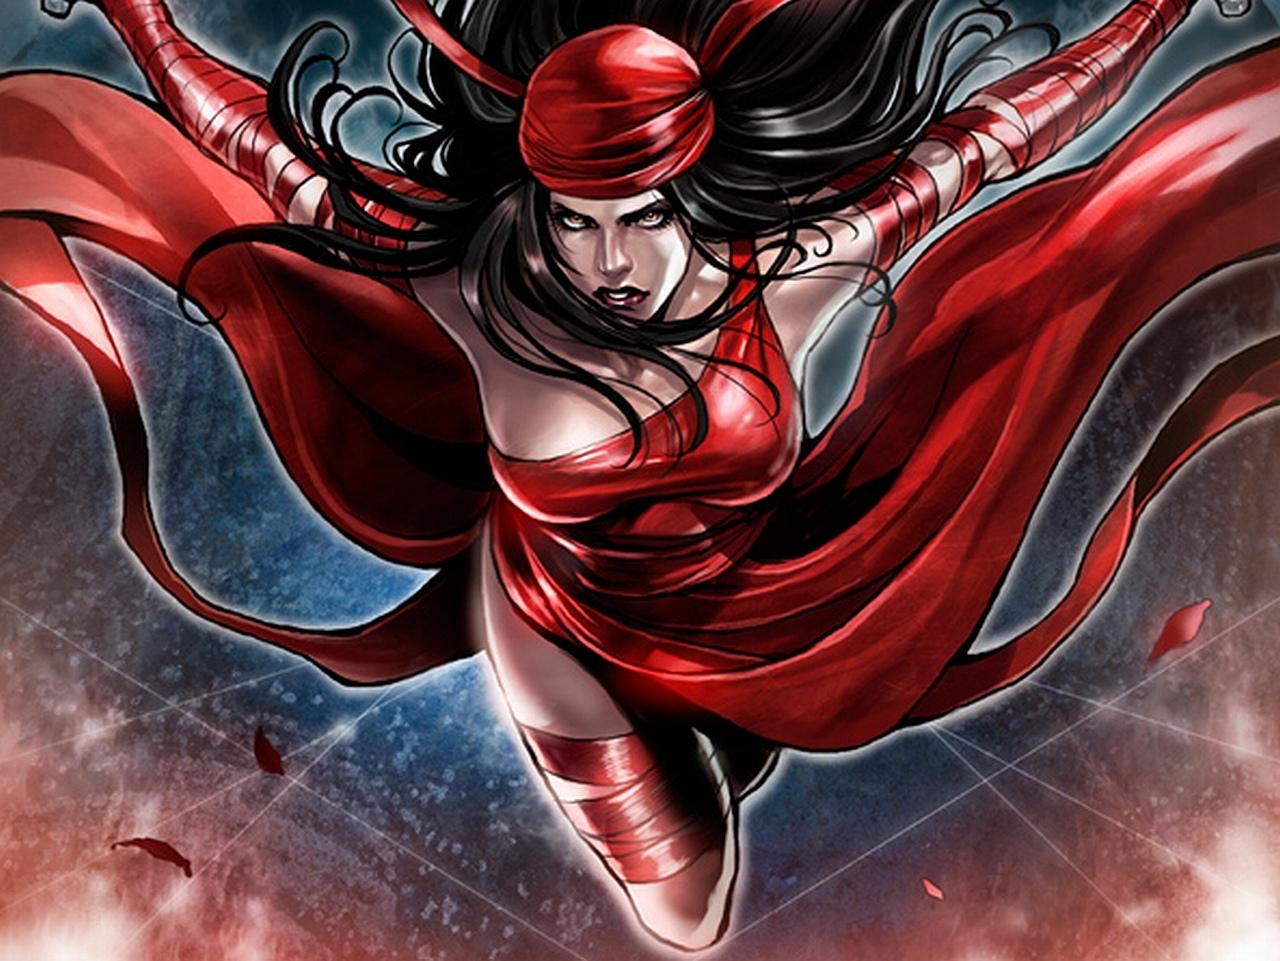 Elektra Comics at 2048 x 2048 iPad size wallpapers HD quality